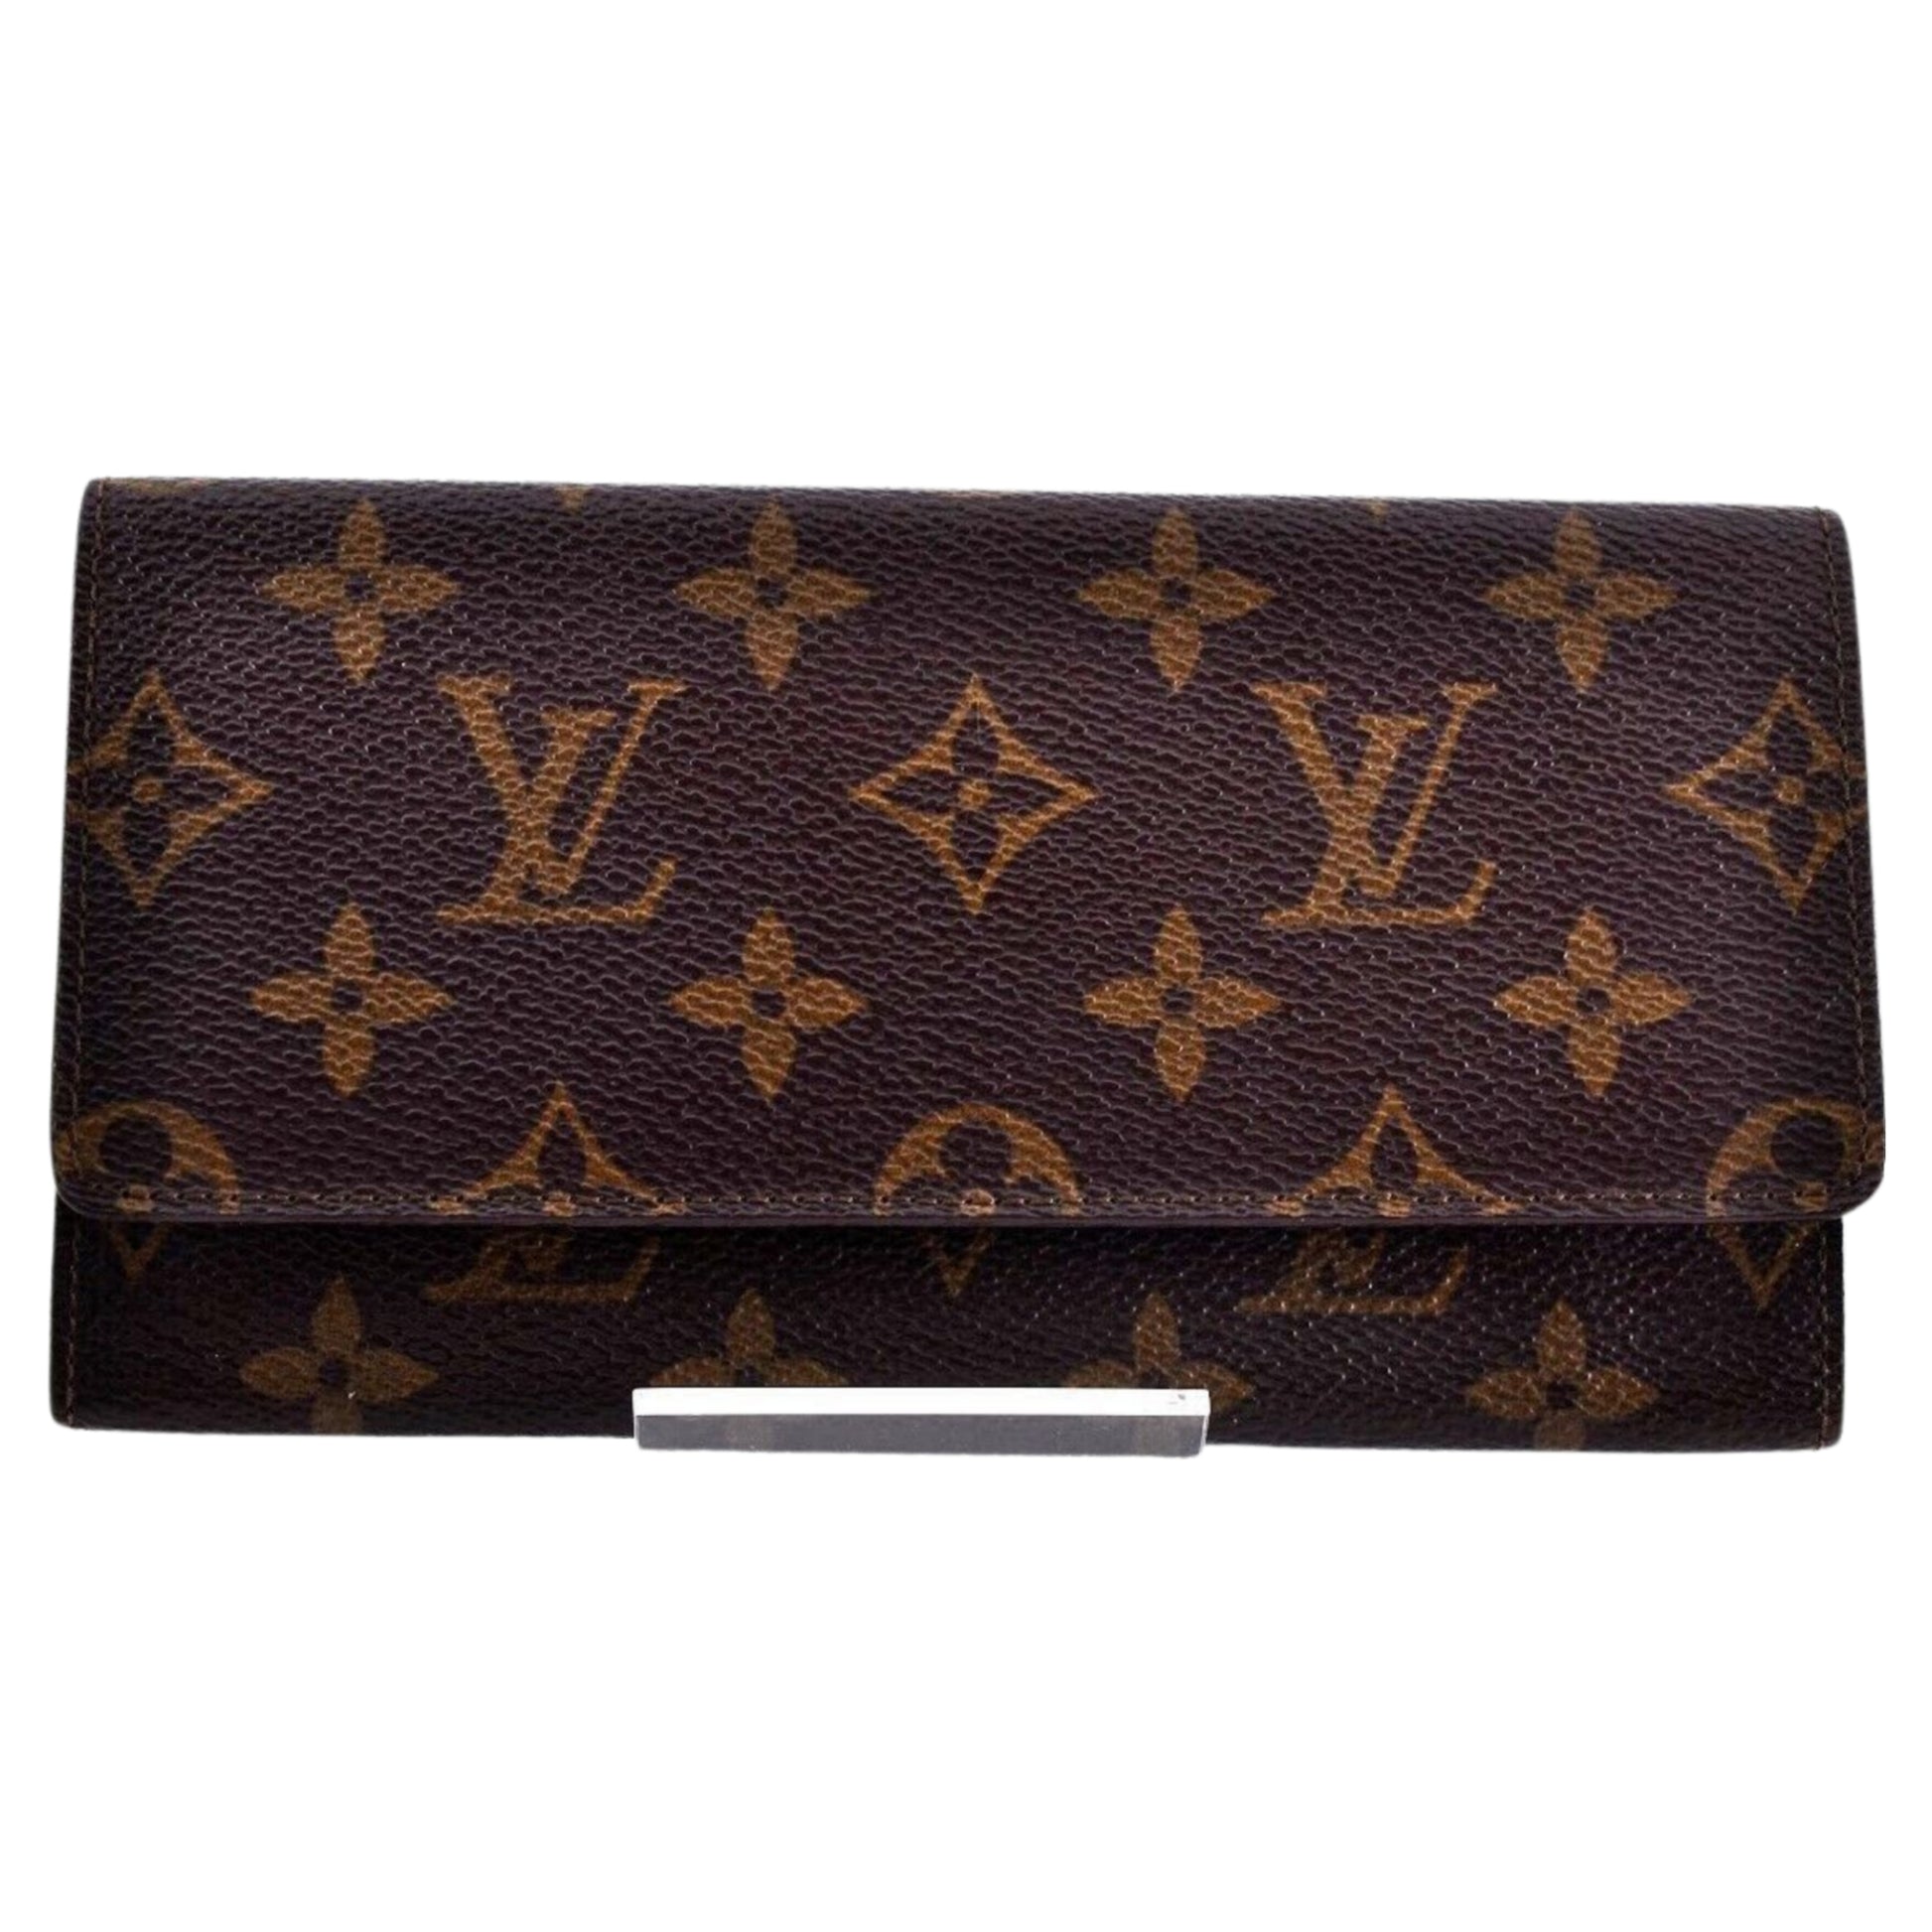 LOUIS VUITTON LV Monogram Leather Brown Bi-Fold PVC Long Wallet - Pre-Owned